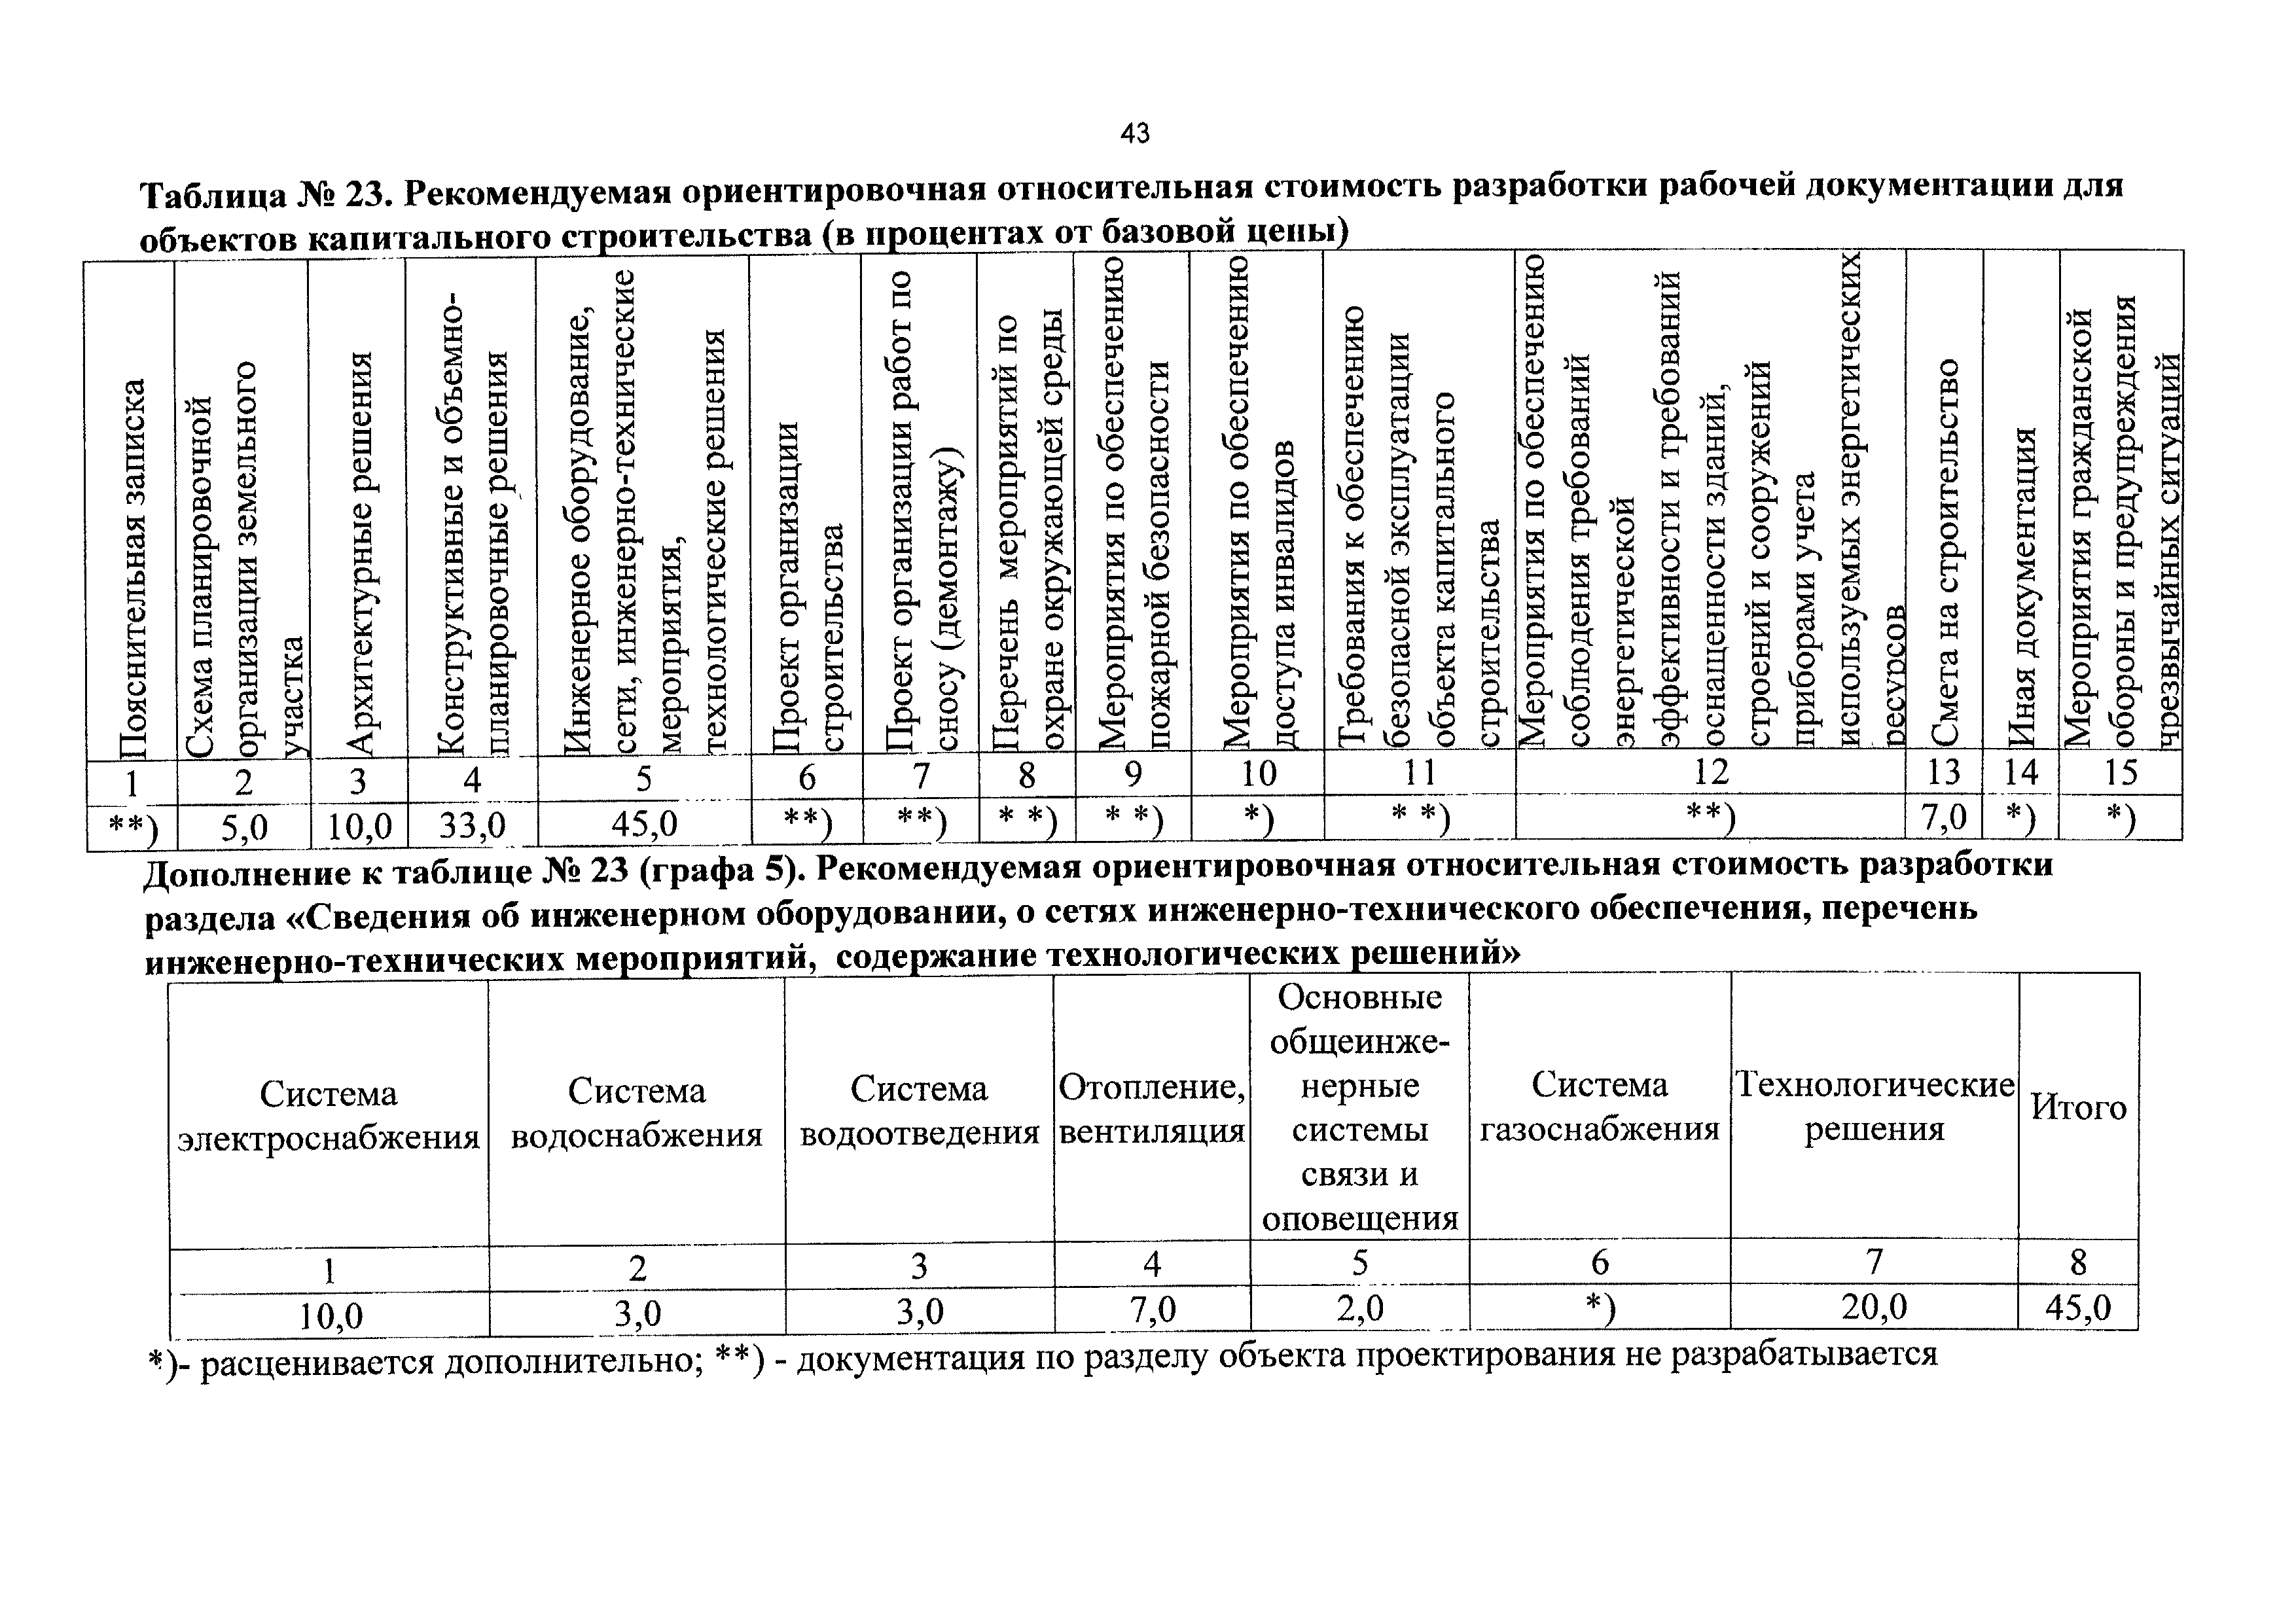 СБЦП 81-2001-17